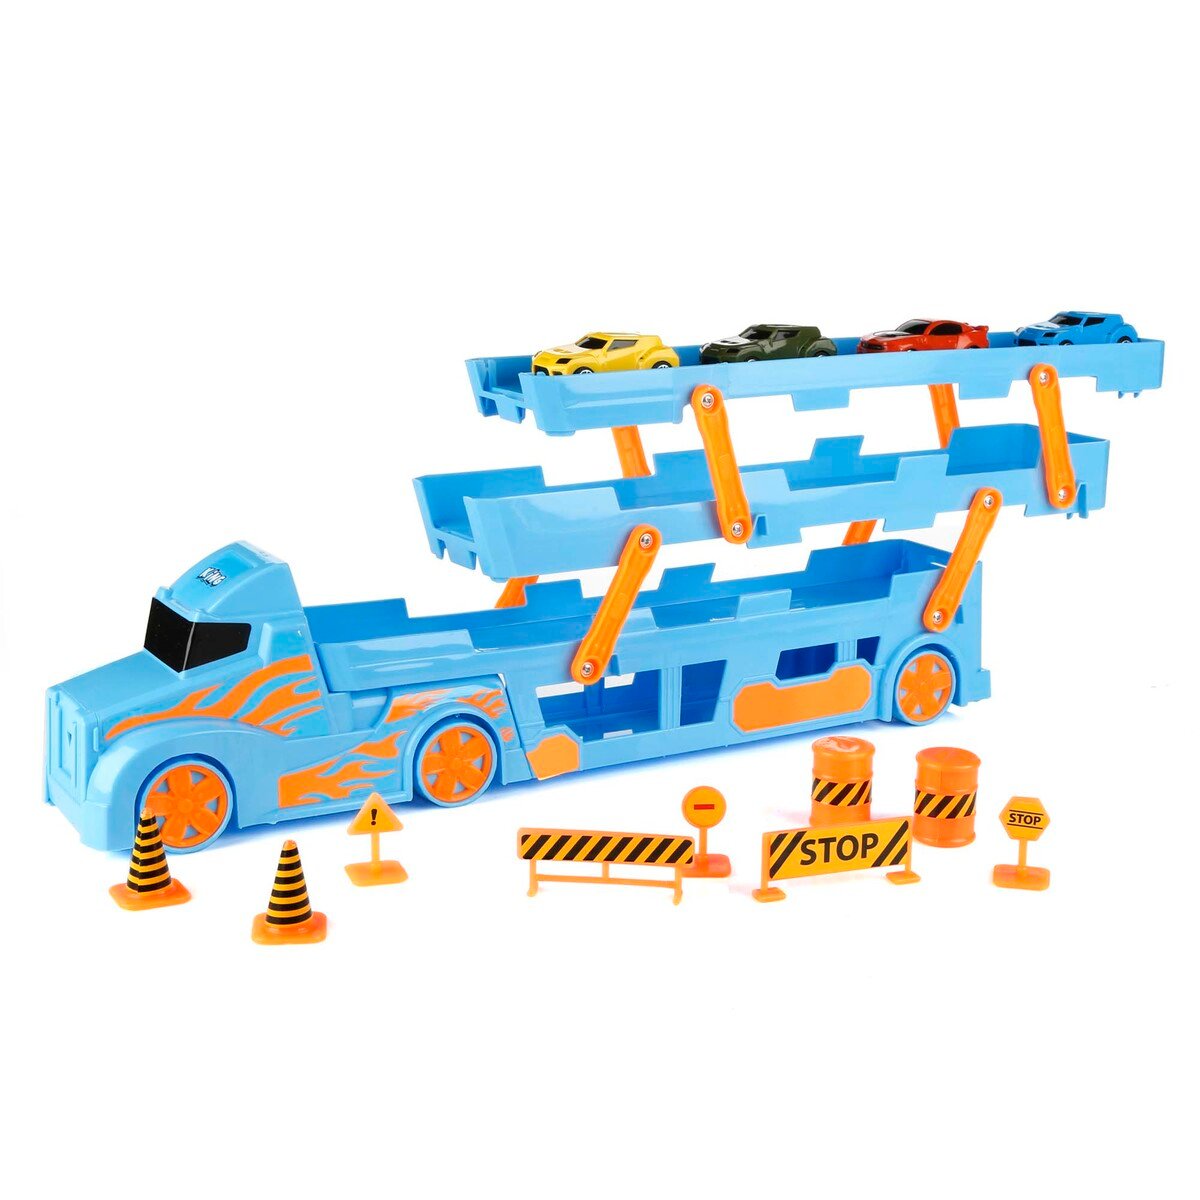 King Toys Transporter Traffic Set ENG1069